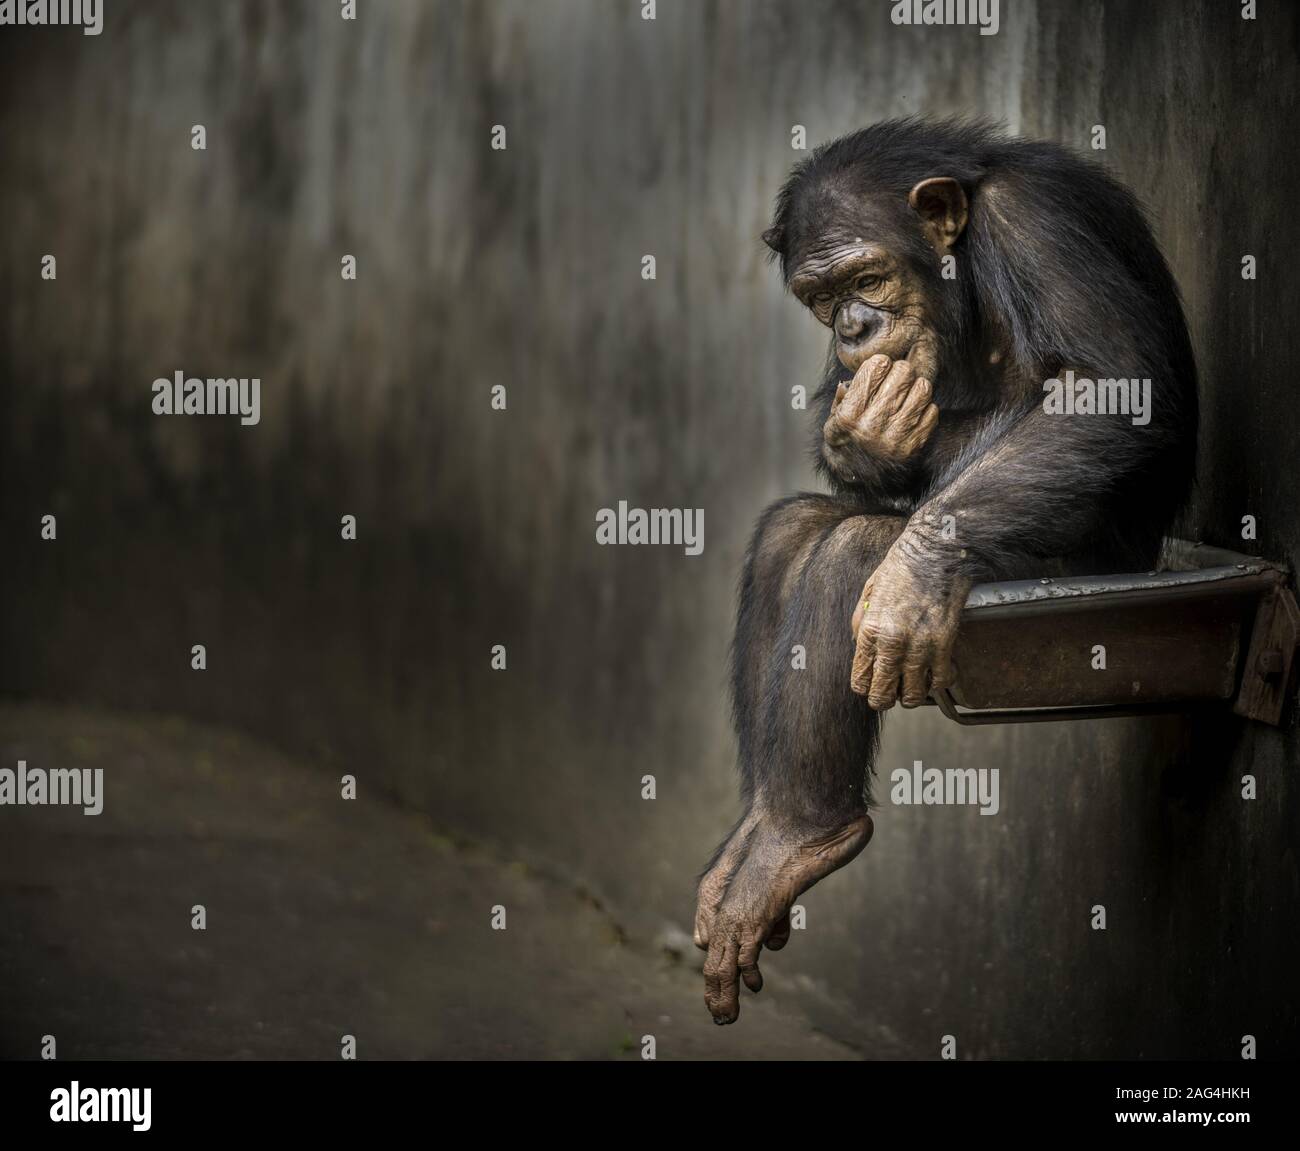 Schimpansen sitzen auf einem Metall rostigen Waschbecken in einem verwitterten Käfig über etwas tief zu kontemplieren. Stockfoto